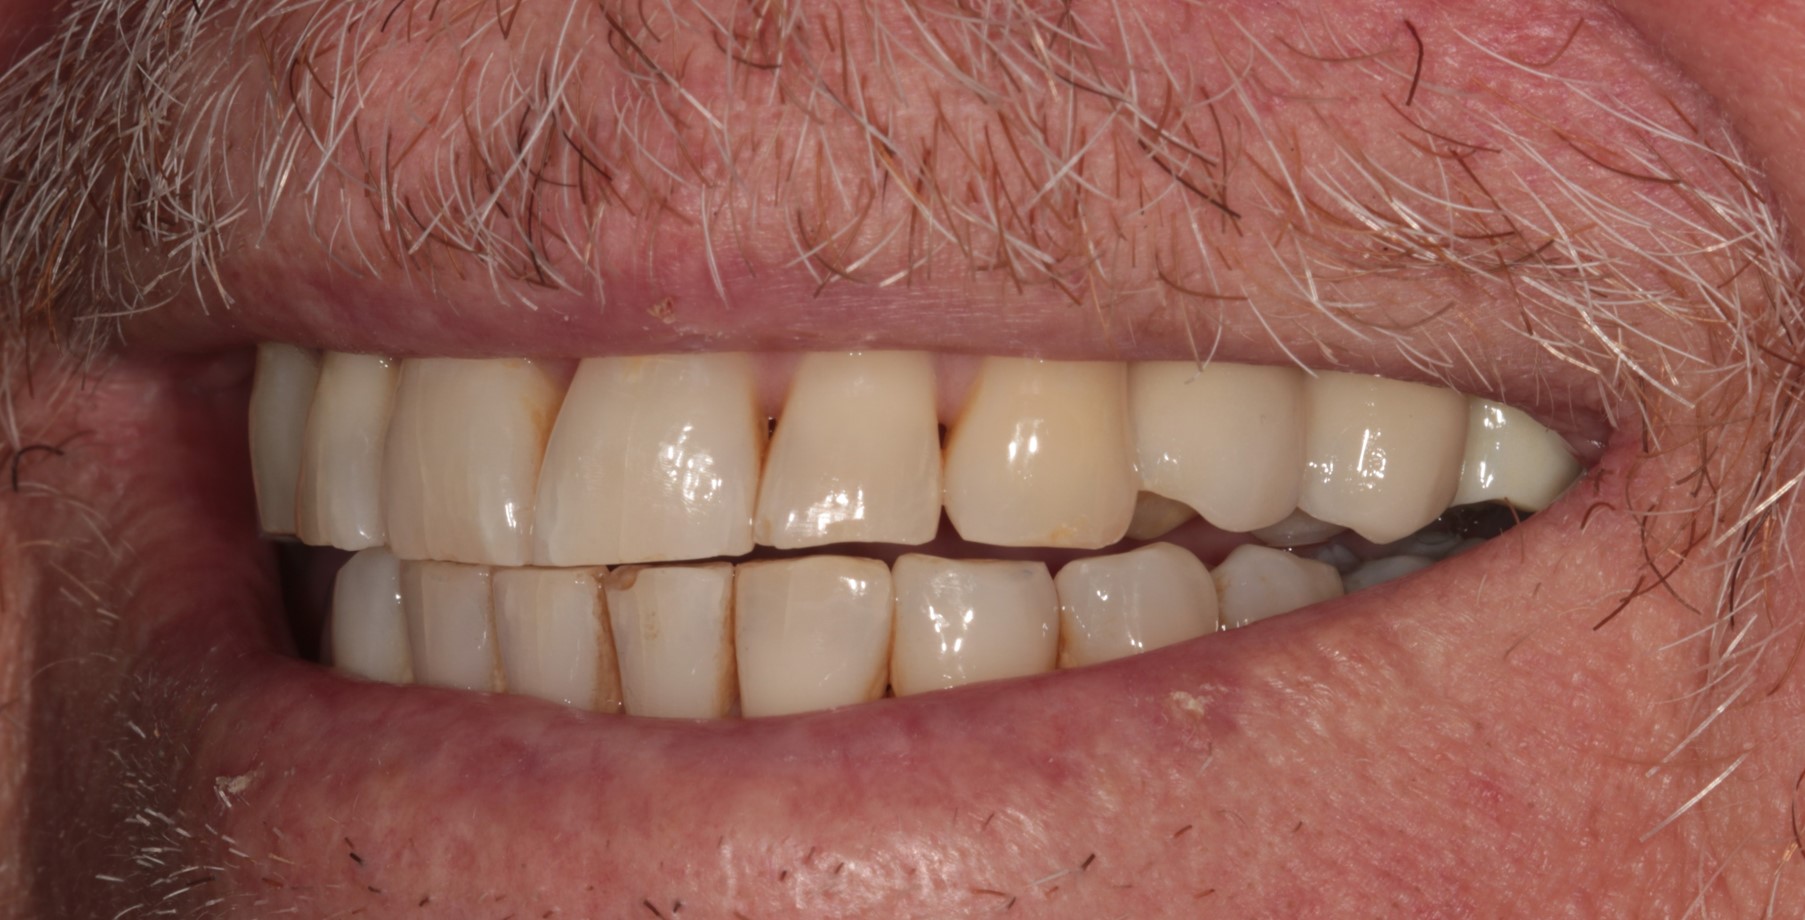 Dental implant after